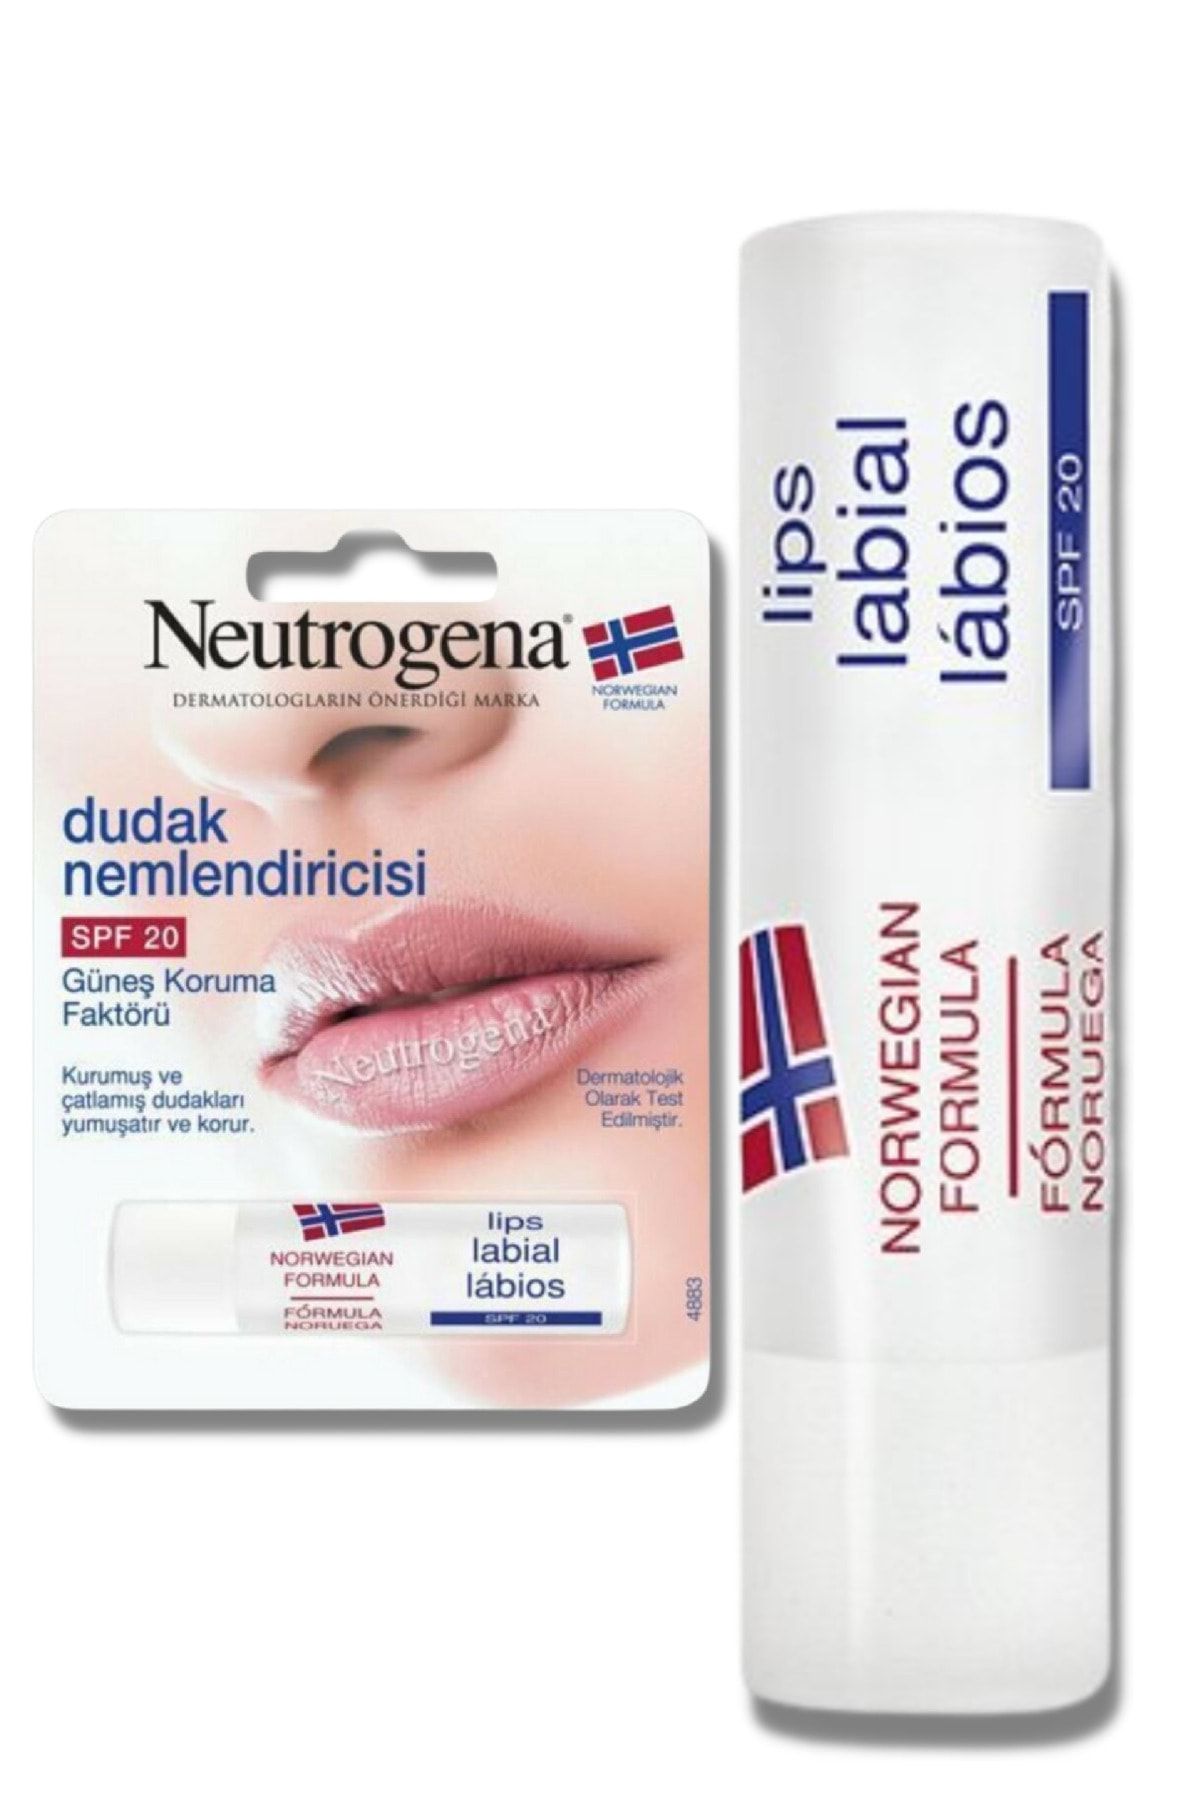 Neutrogena Dudak Nemlendiricisi Spf 20 Güneş Koruma Faktörlü Lips 4,8 Gr